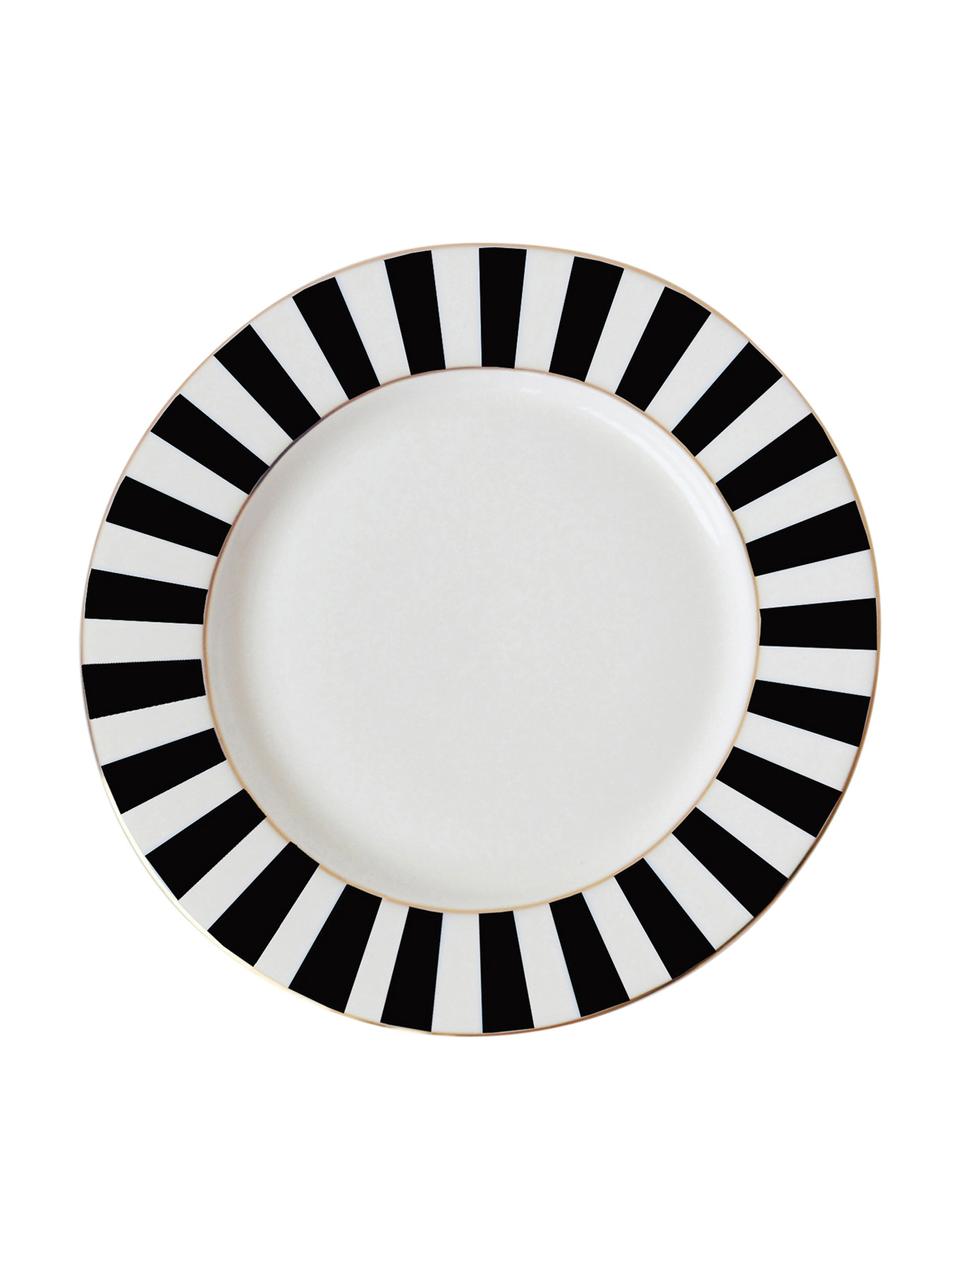 Raňajkový tanier  s pásikovým dekorom v čiernej/bielej farbe Stripy, Čierna, biela